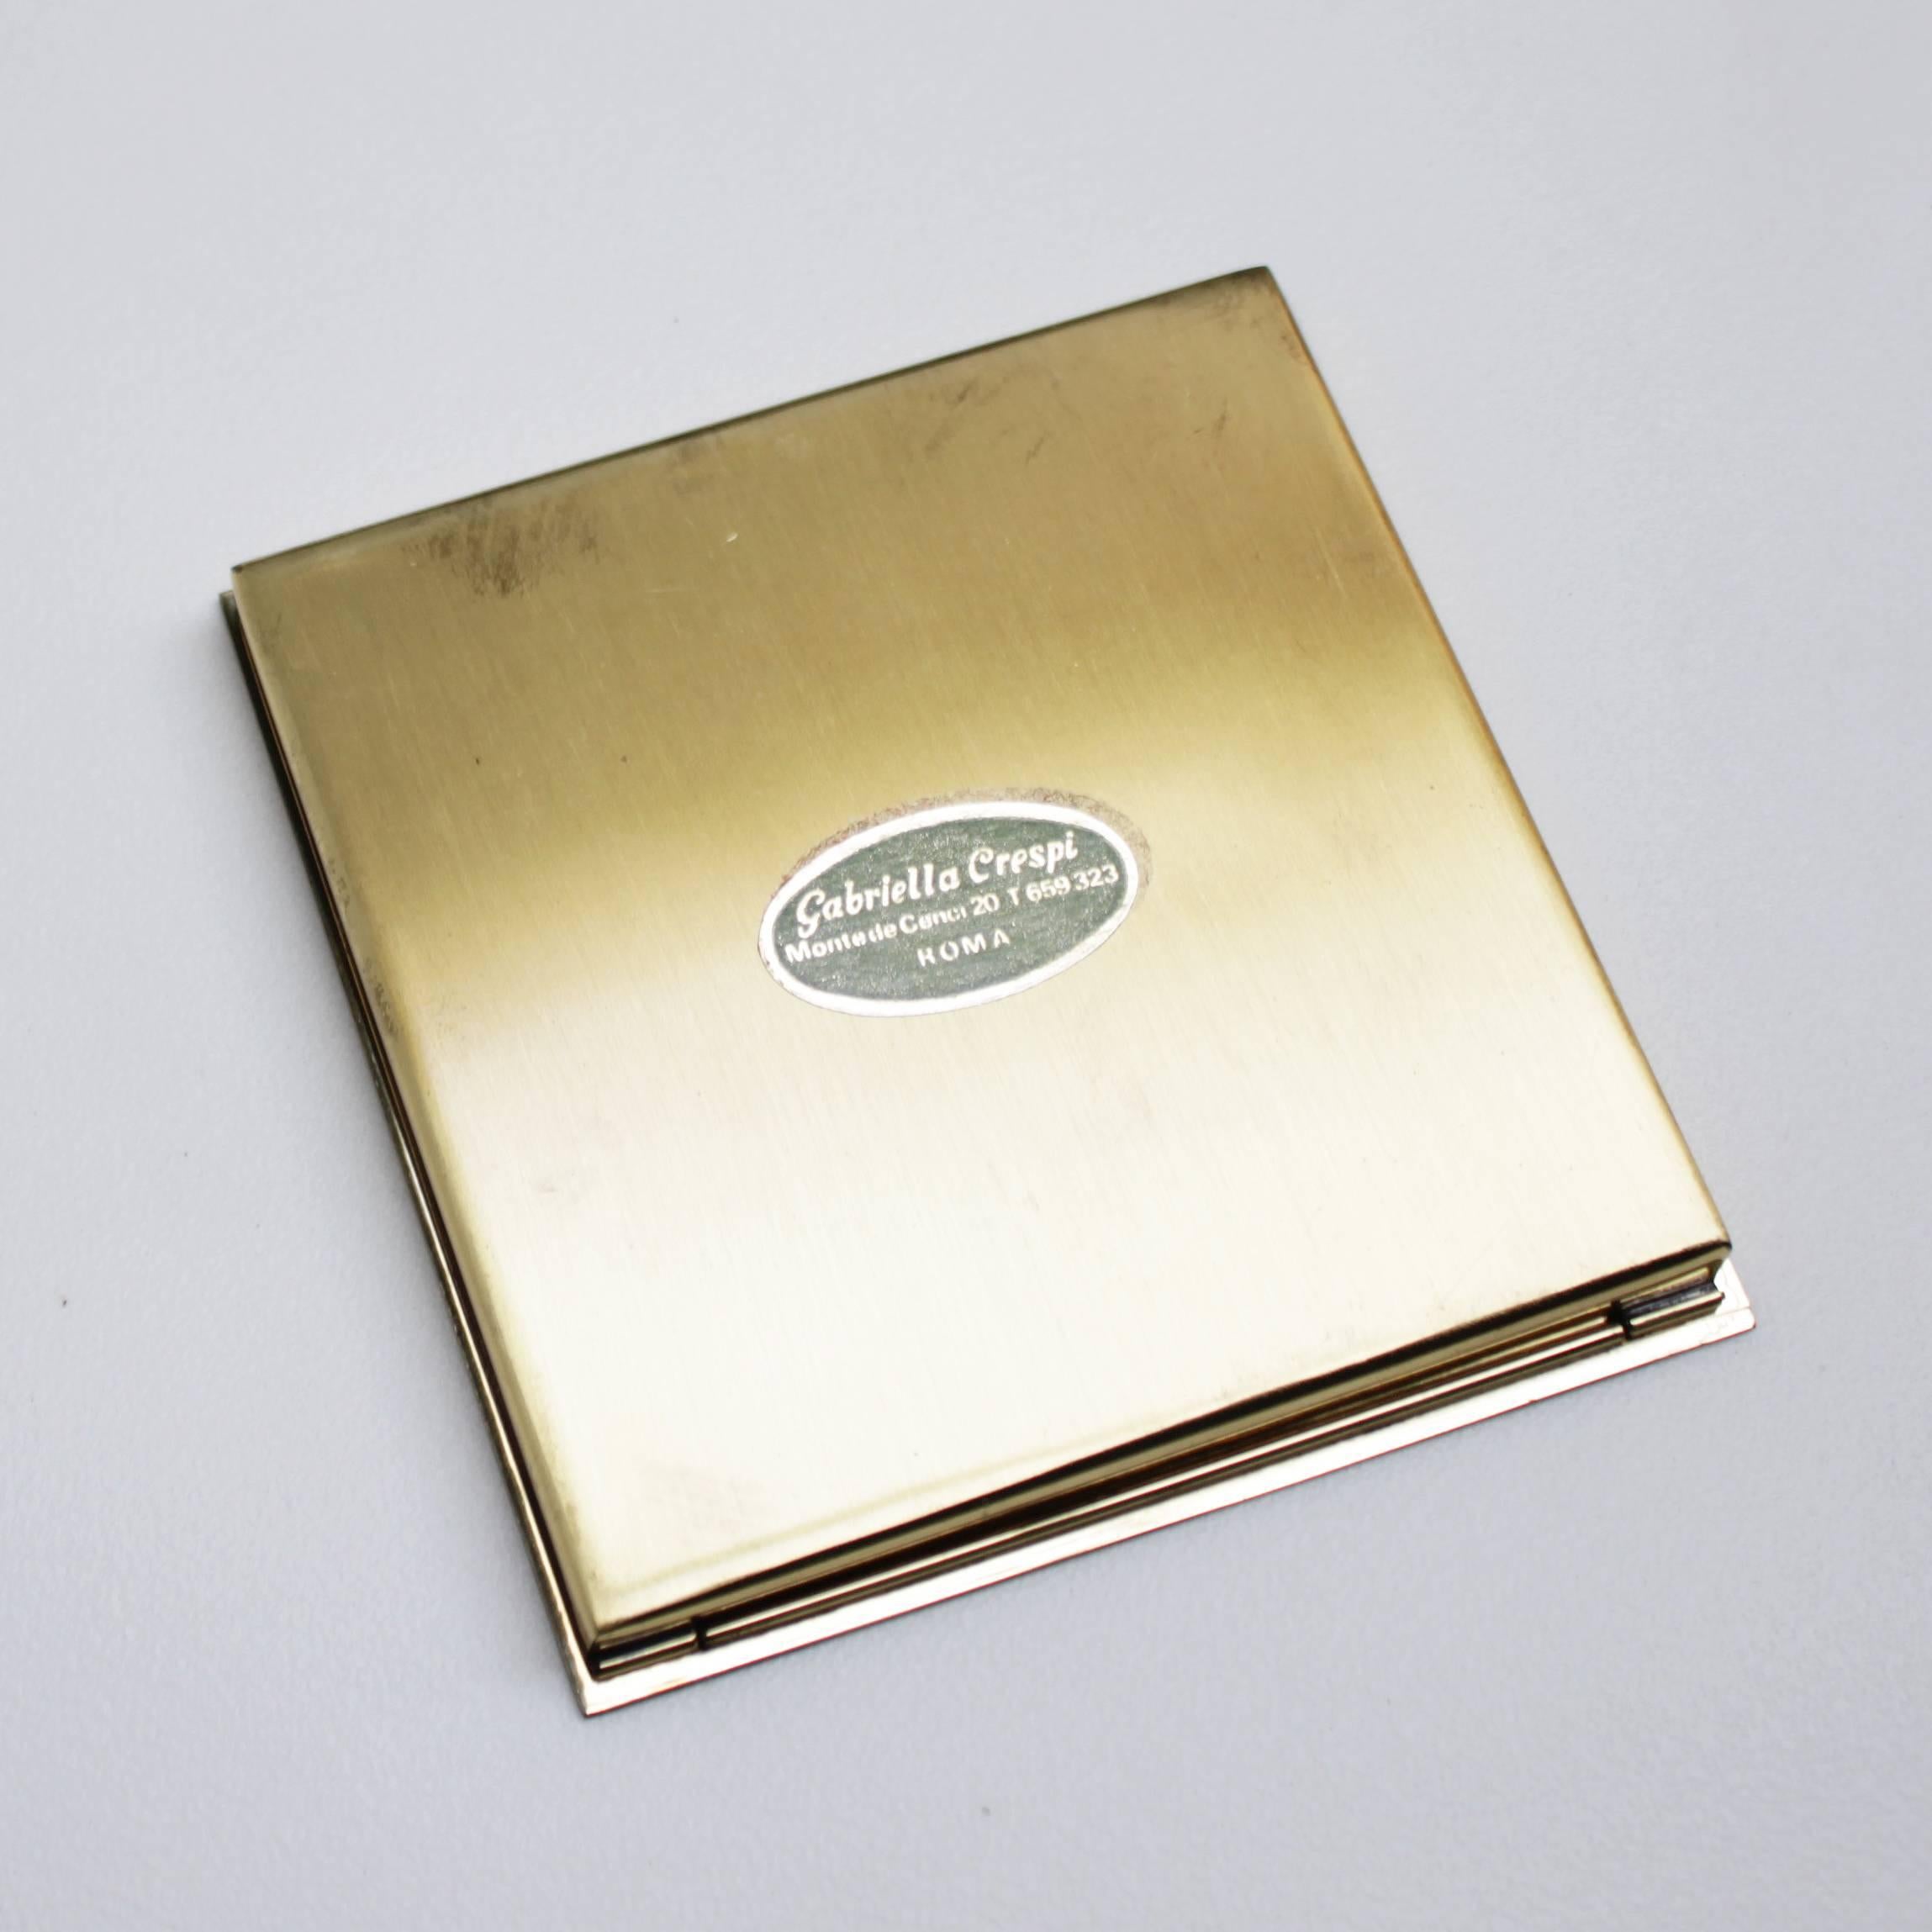 Brass Cigarette Case or Box by Gabriella Crespi, Signed 1